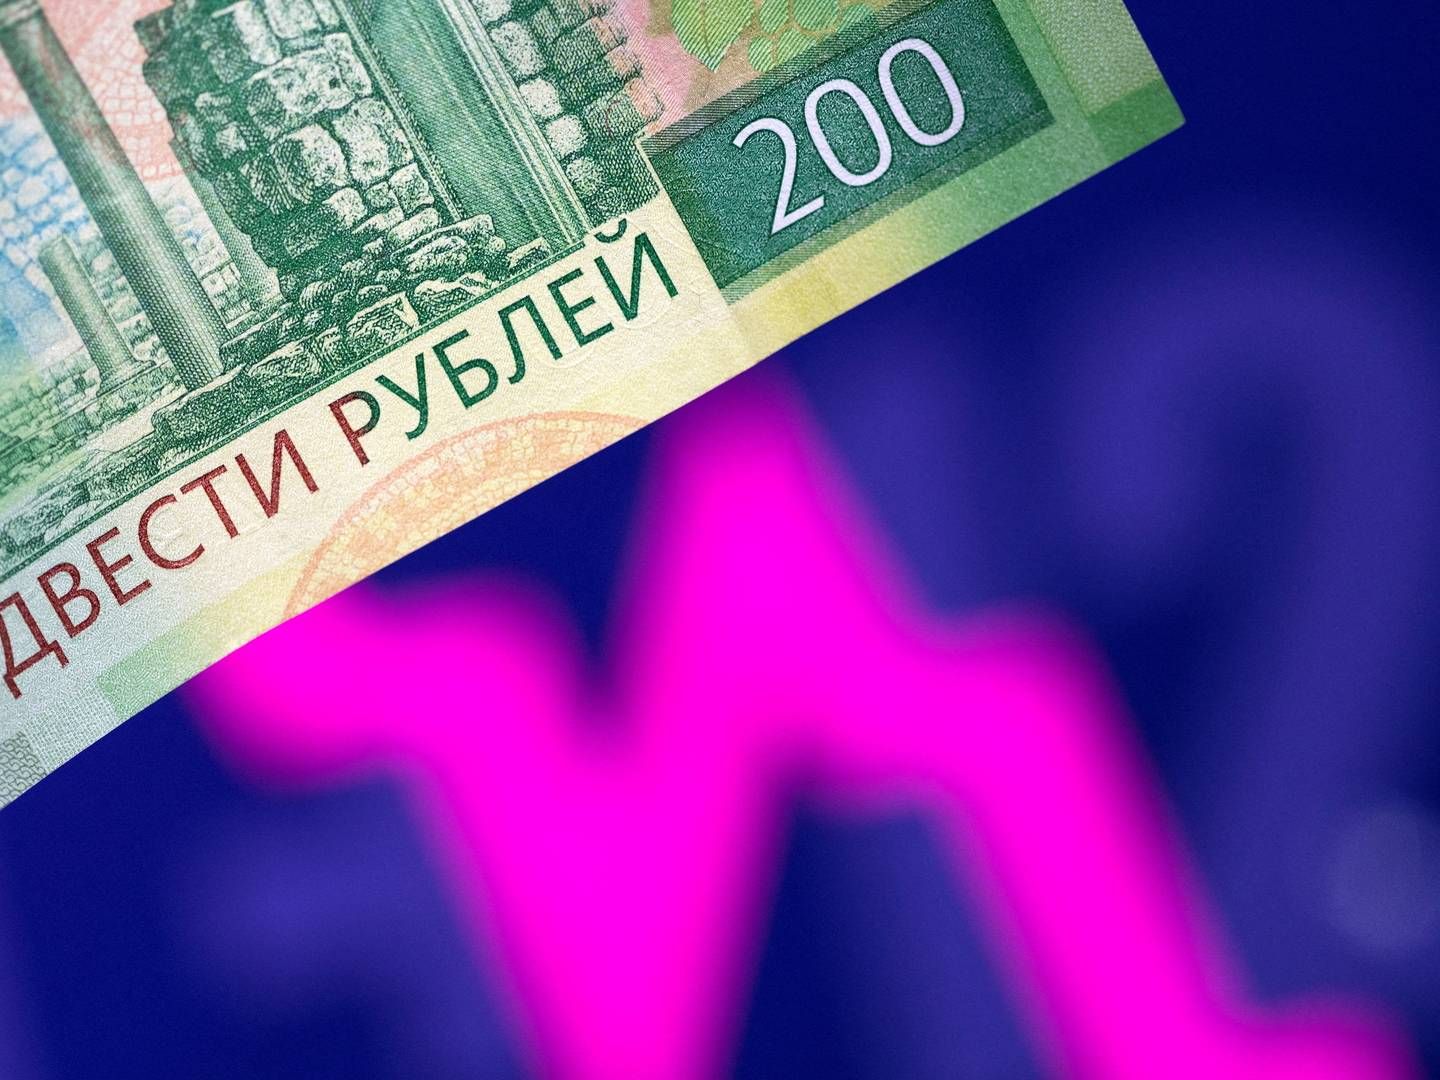 Rusland vil betale af på sine obligationer i rubler i stedet for dollar, og det kan føre til en teknisk betalingsstandsning. | Foto: Dado Ruvic/REUTERS / X02714